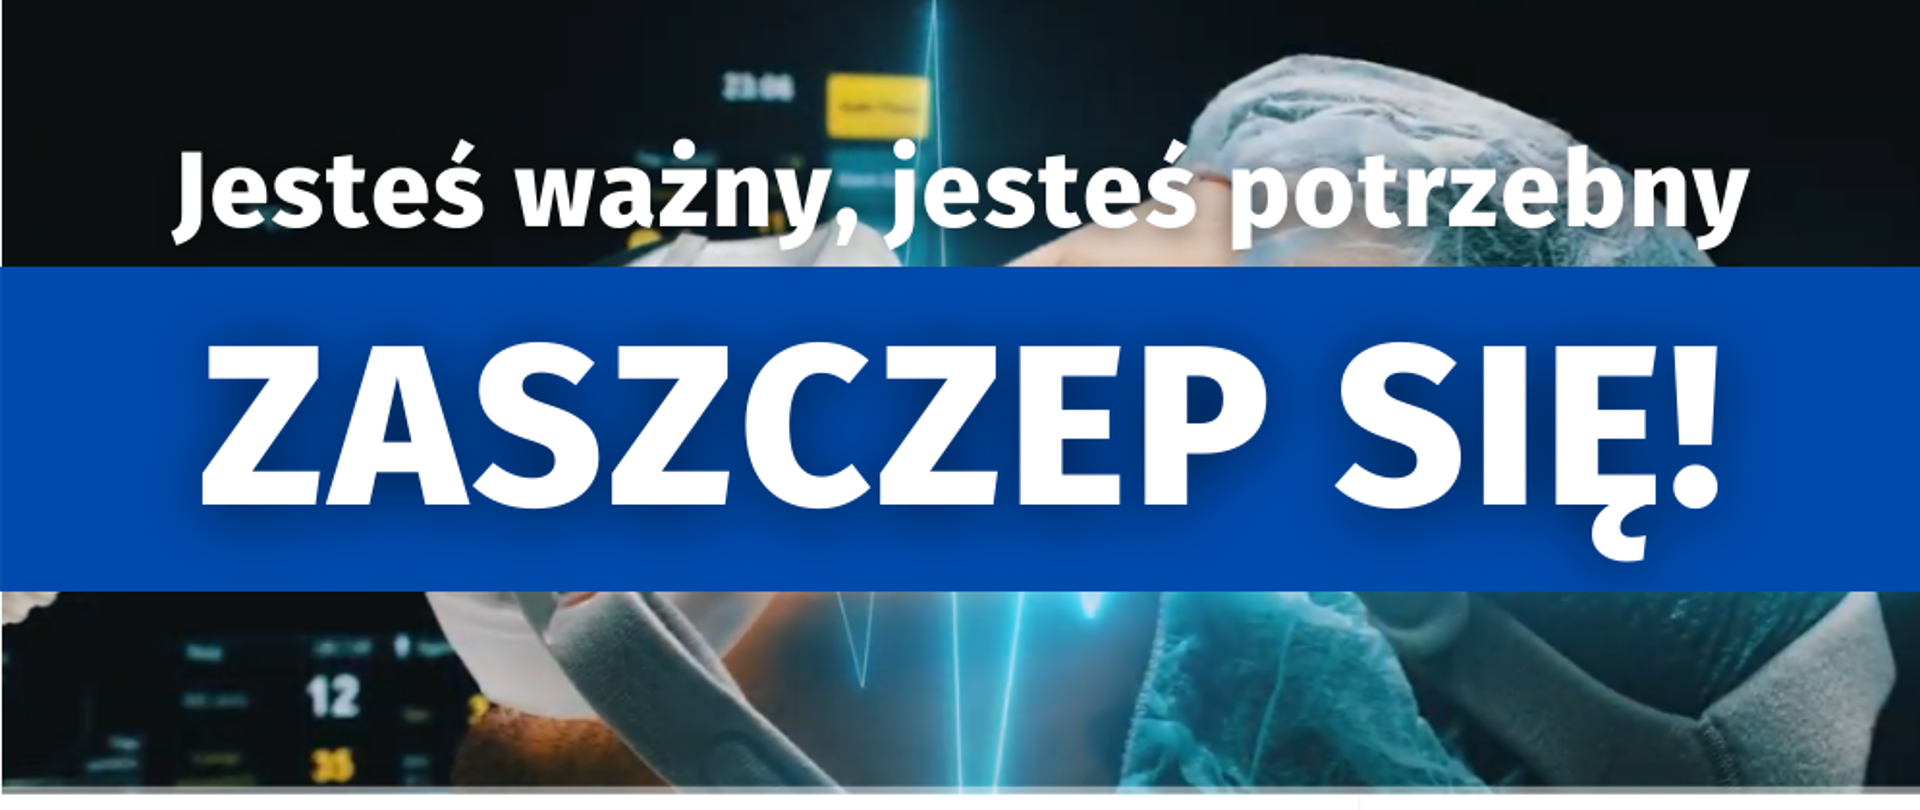 Na pierwszym planie napis: "Jesteś ważny, jesteś potrzebny Zaszczep się!", pod spodem logo Radia Kraków, Wojewody Małopolskiego i Telewizji Kraków